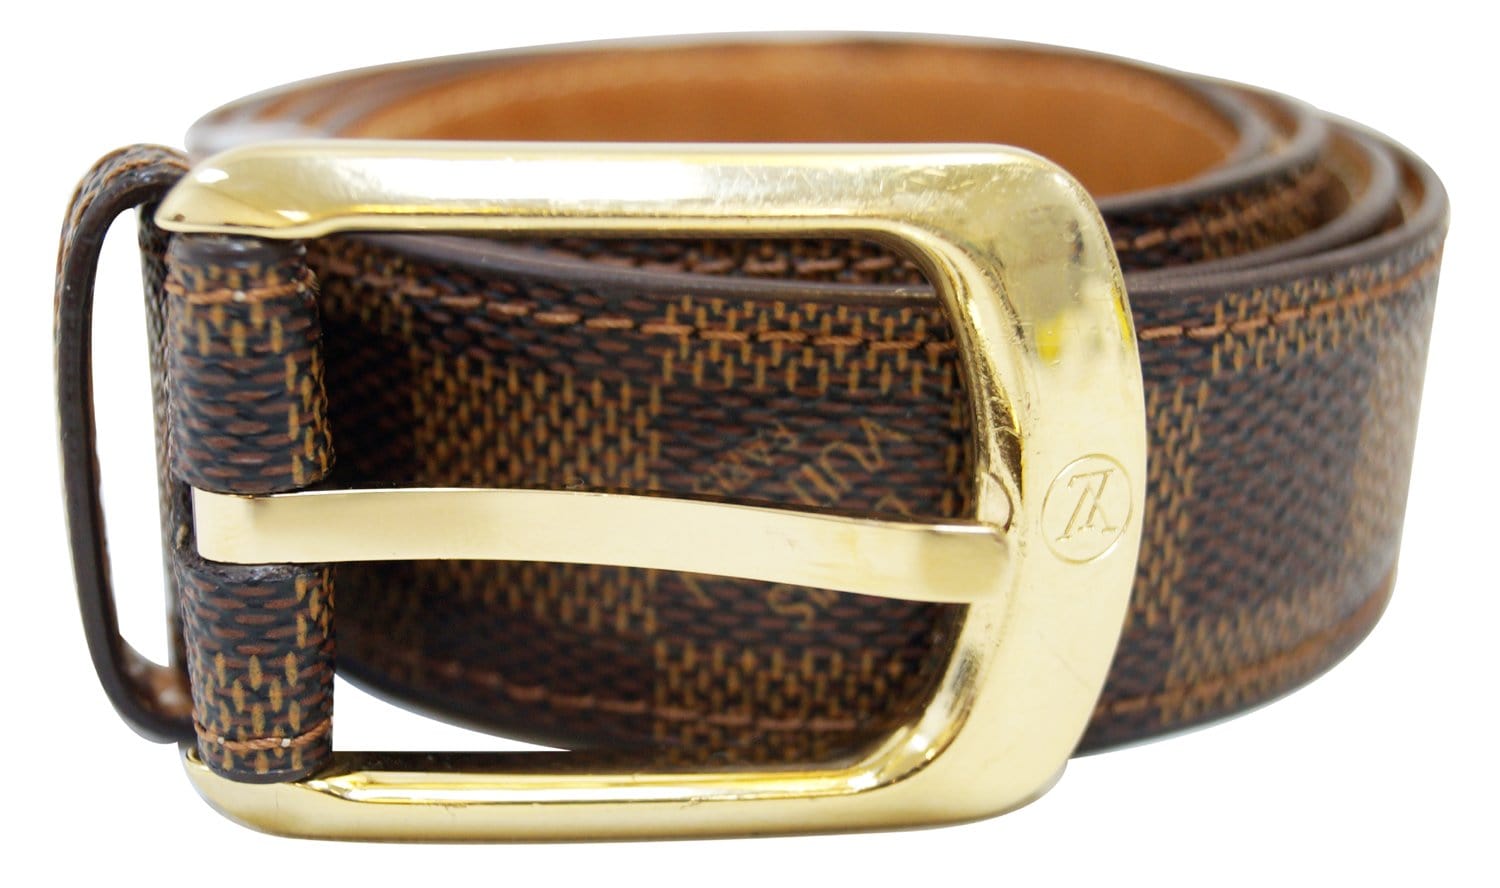 Louis Vuitton Travelling Requisites Tan Belt (Size 80/32)